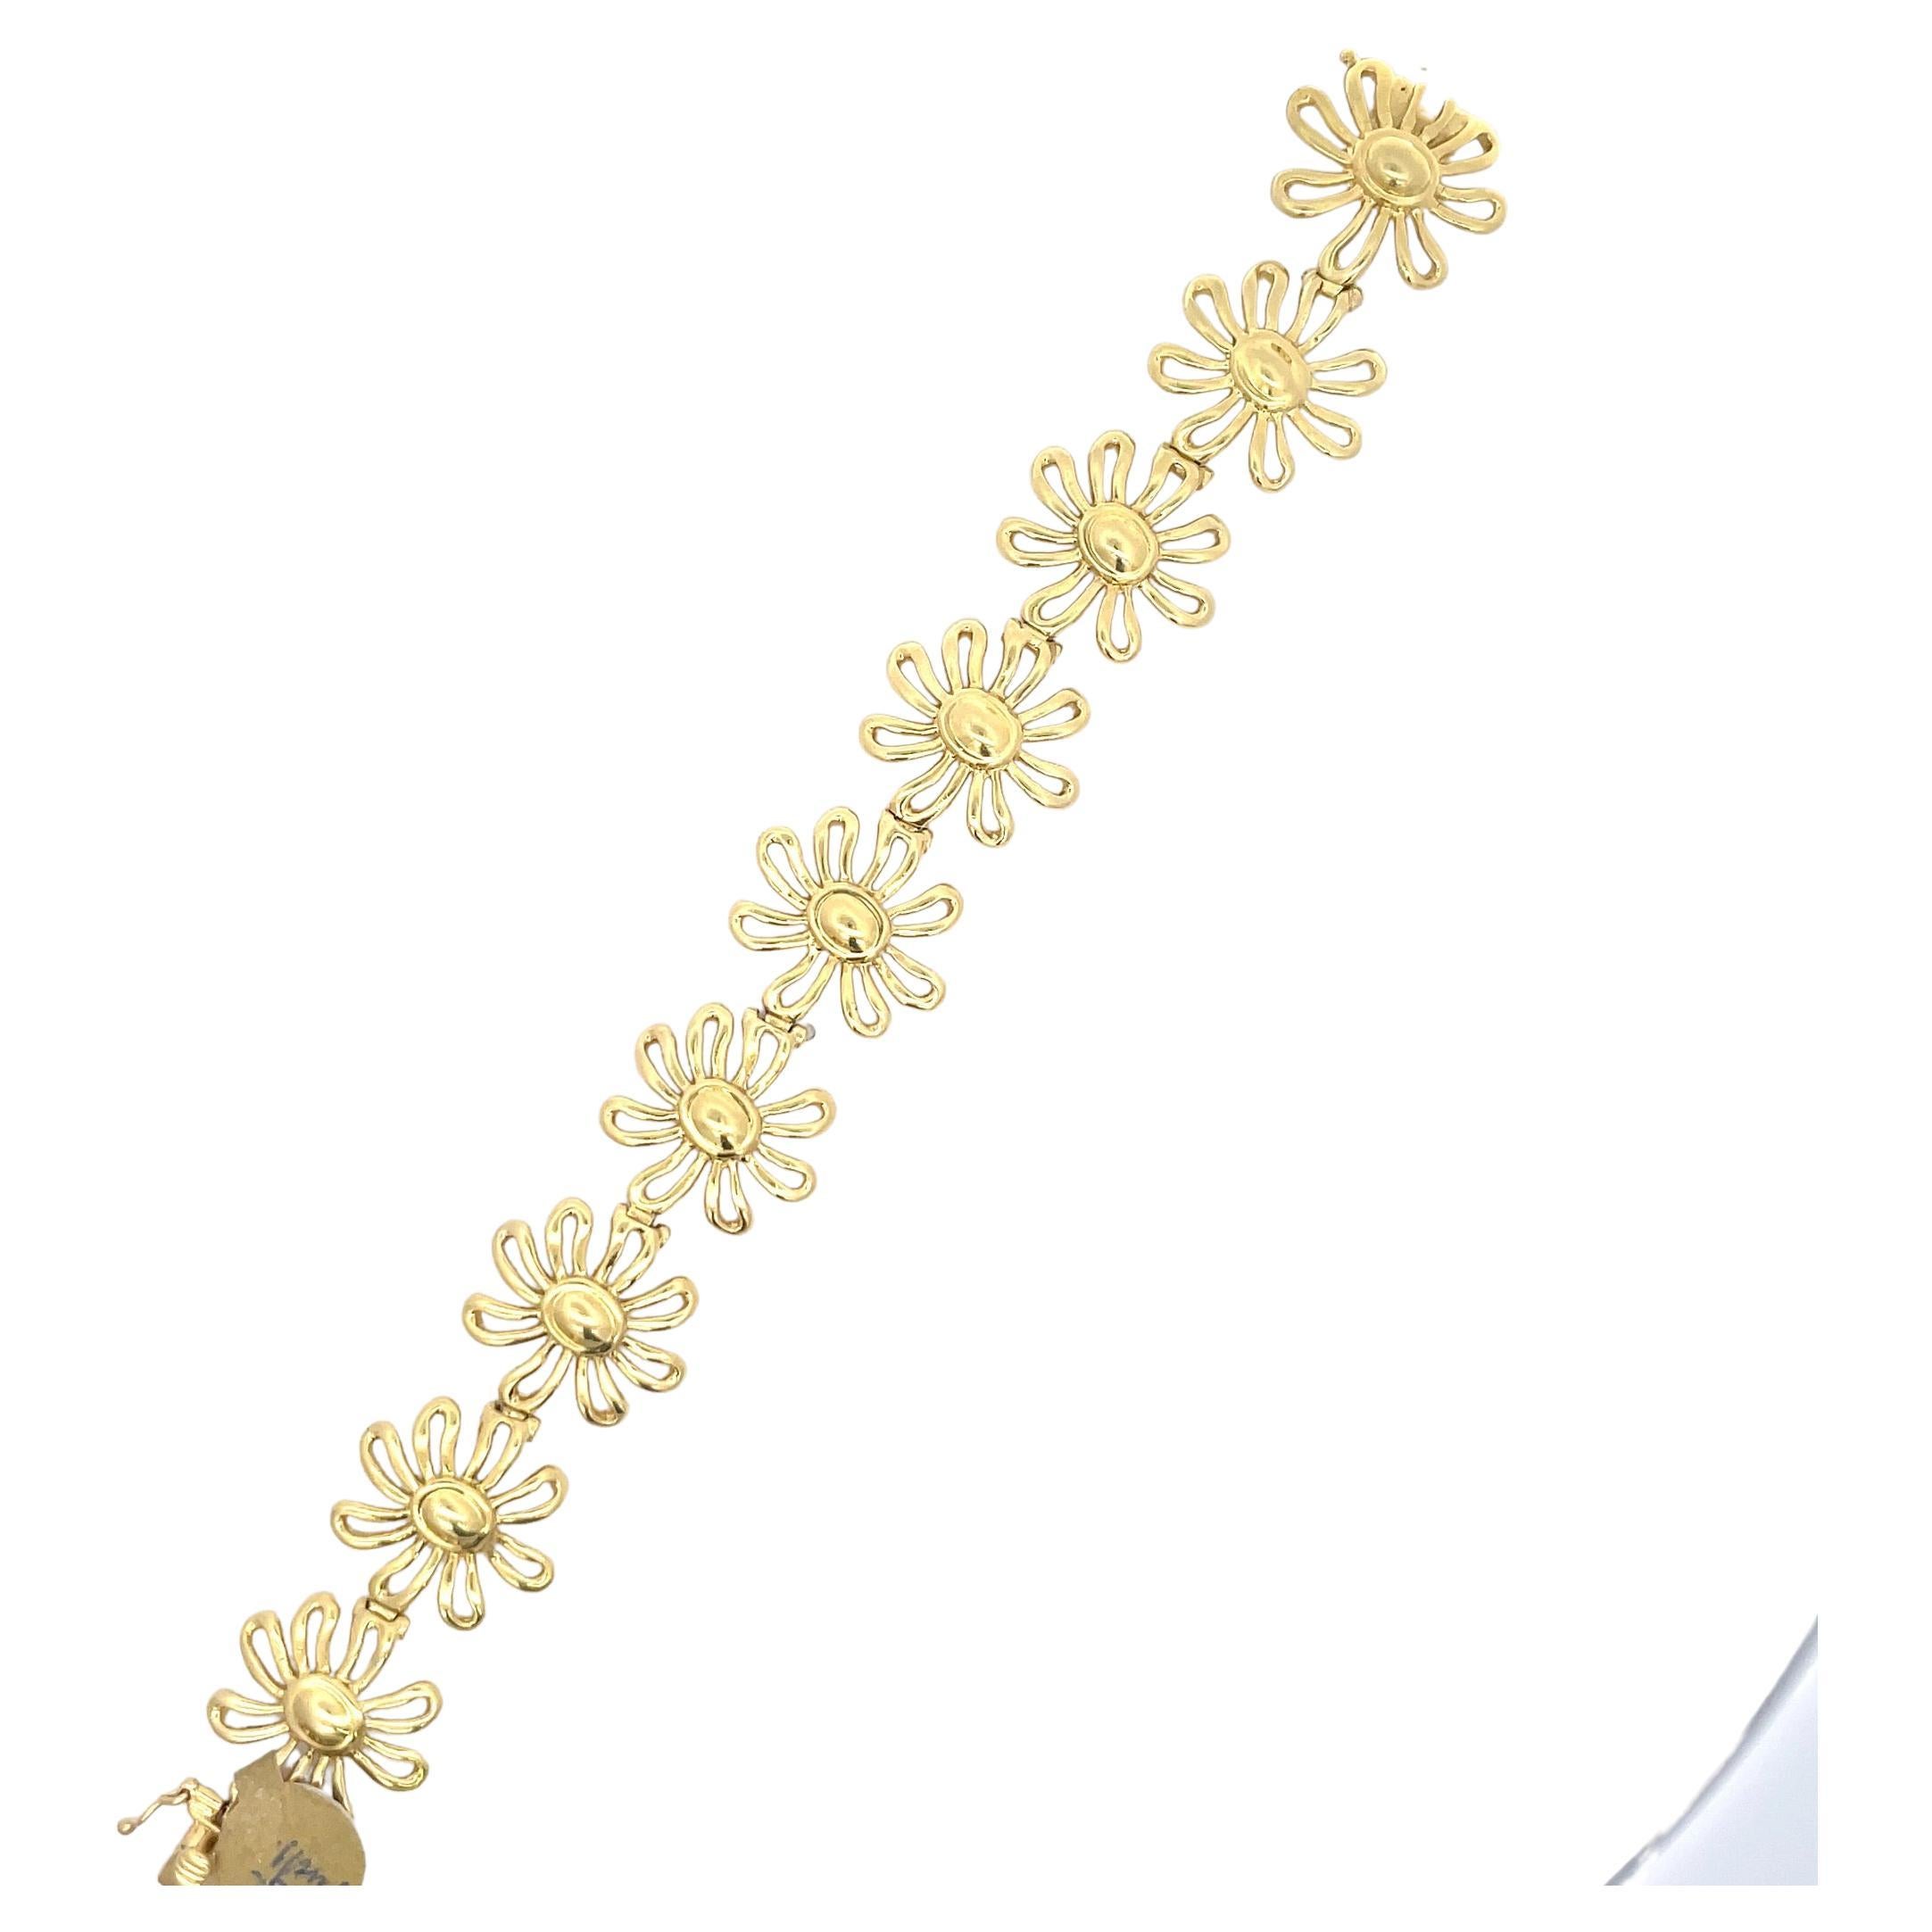 Tiffany & Co. Bracelet Paloma Picasso composé de 9 fleurs de marguerite pesant 34,6 grammes en or jaune 18 carats.
Très féminin ! 